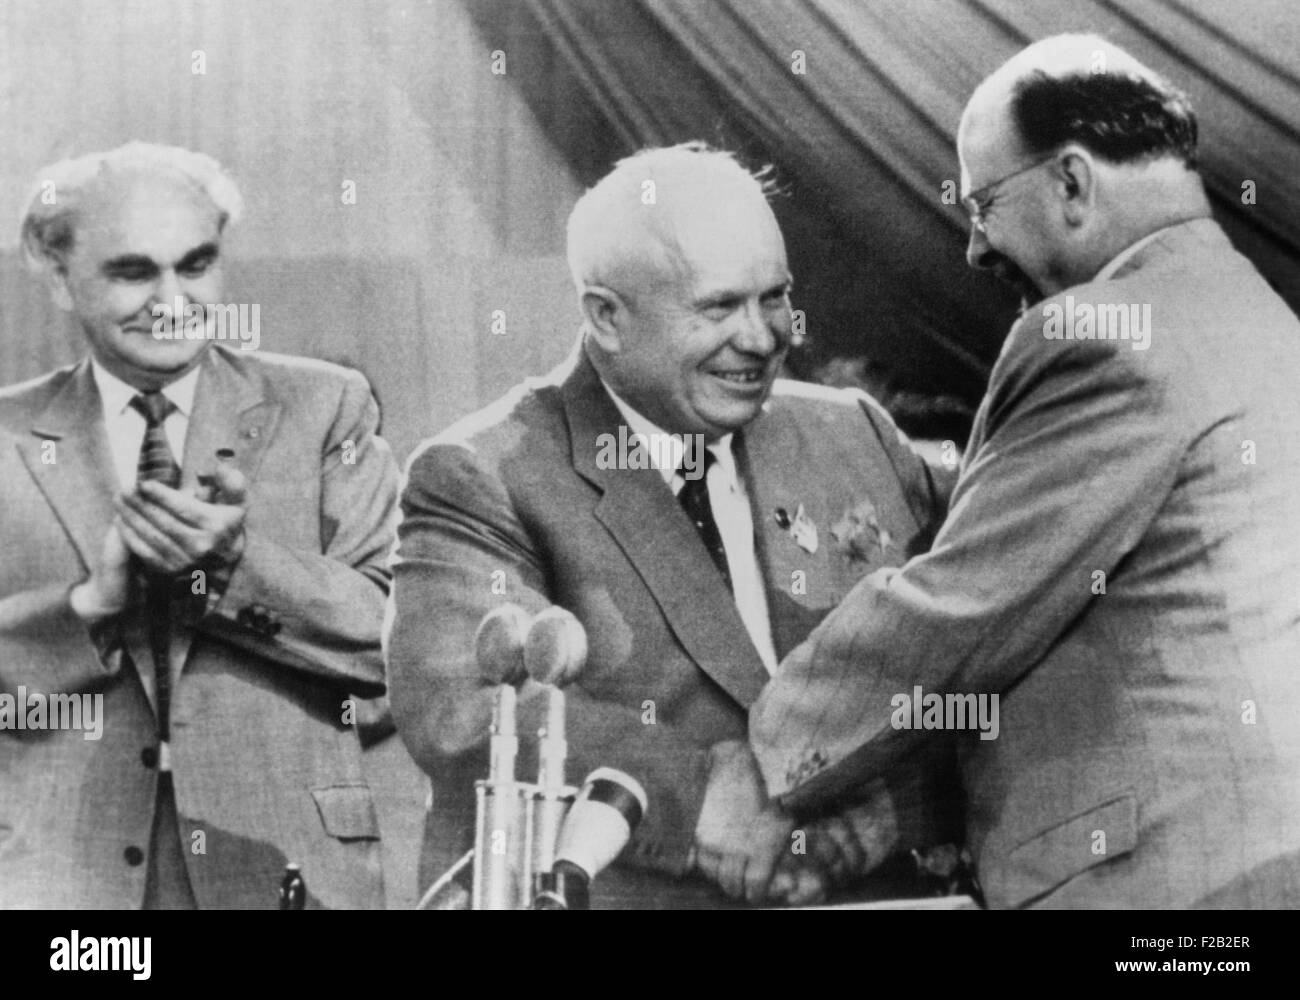 Sowjetischen Ministerpräsidenten Nikita Khrushchev ist von ostdeutschen kommunistischen Führer Walter Ulbricht beglückwünscht. Khrushchev verurteilte Jugoslawiens Josip Titos "nationaler Kommunismus", die außerhalb des Warschauer Paktes geblieben. Auf dem Kongress der ostdeutschen Kommunistischen Partei, in Berlin, Juli 1958. Auf der linken Seite ist Heinrich Rau, DDR-Politbüro. (CSU 2015 8 542) Stockfoto